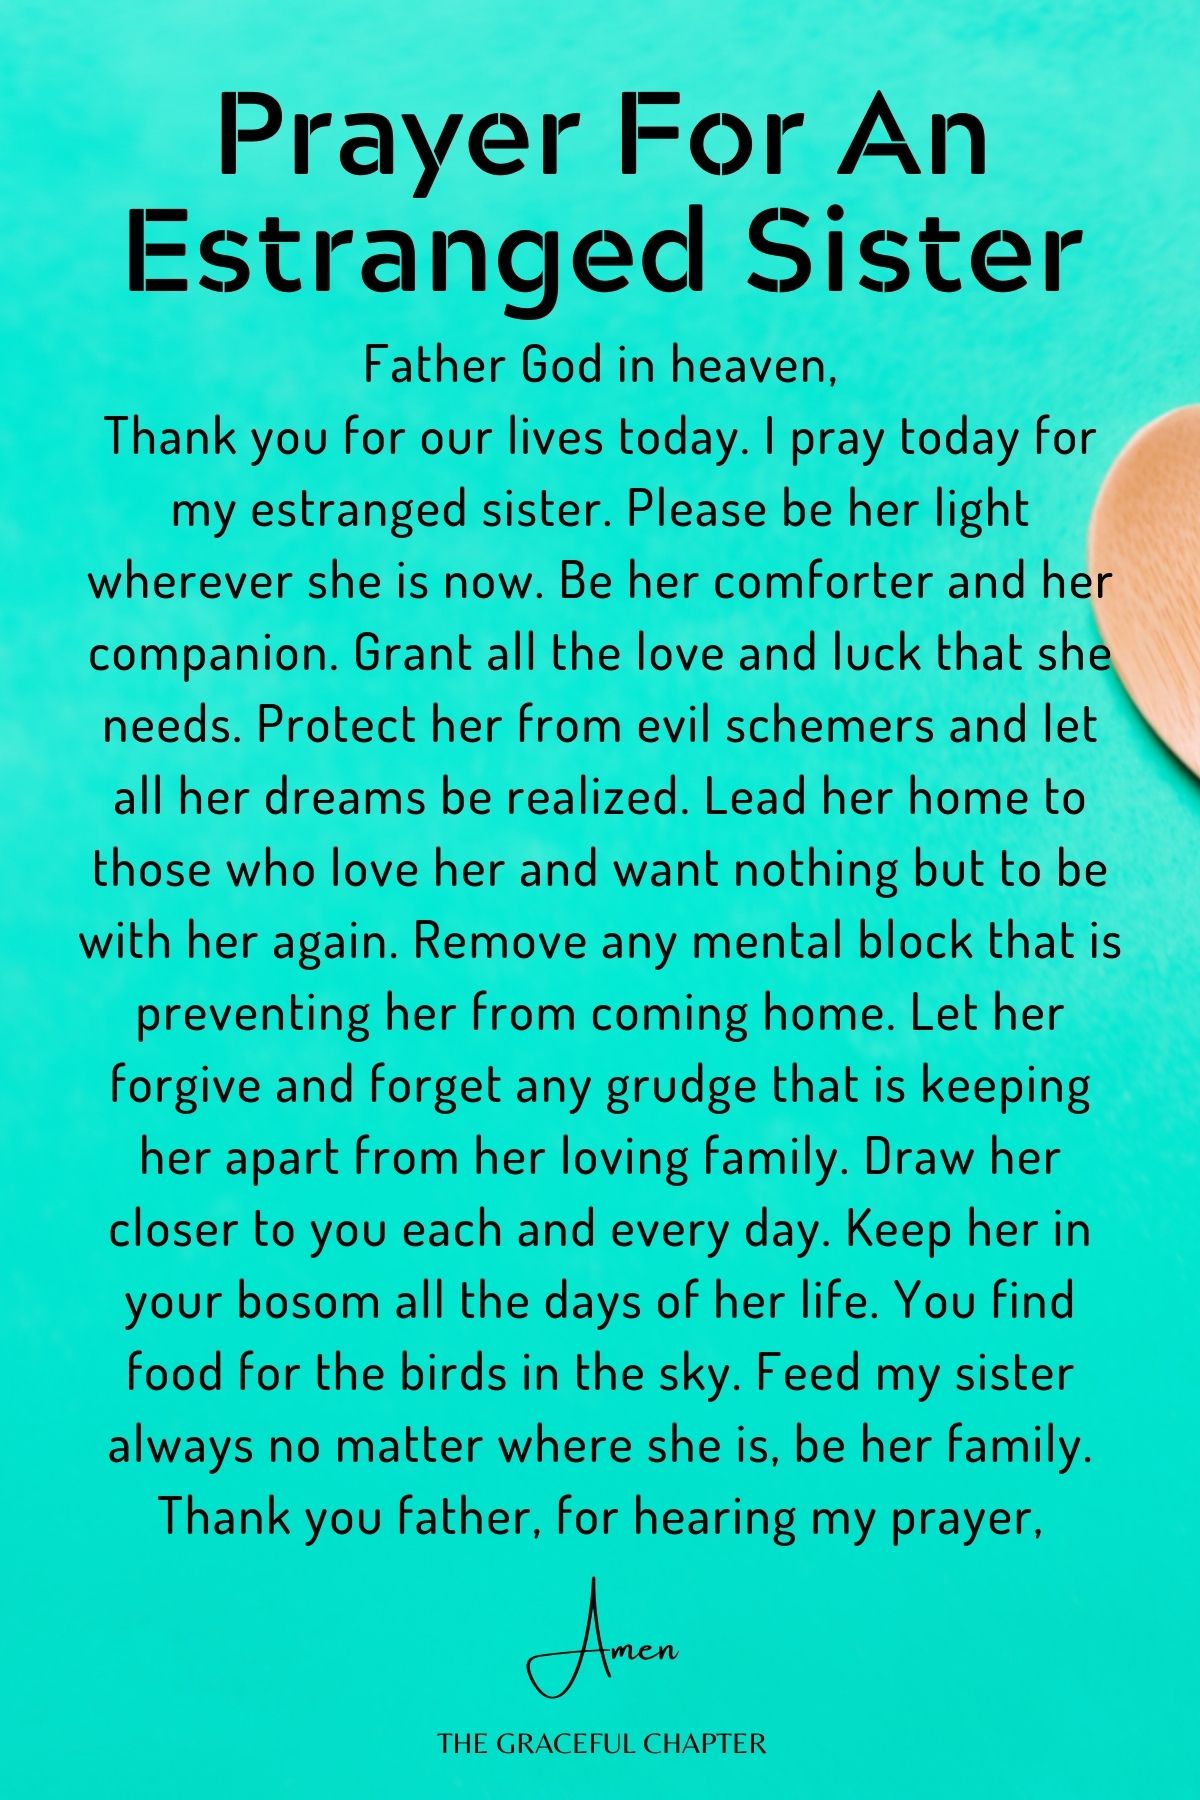 Prayer for an estranged sister - prayers for my sister